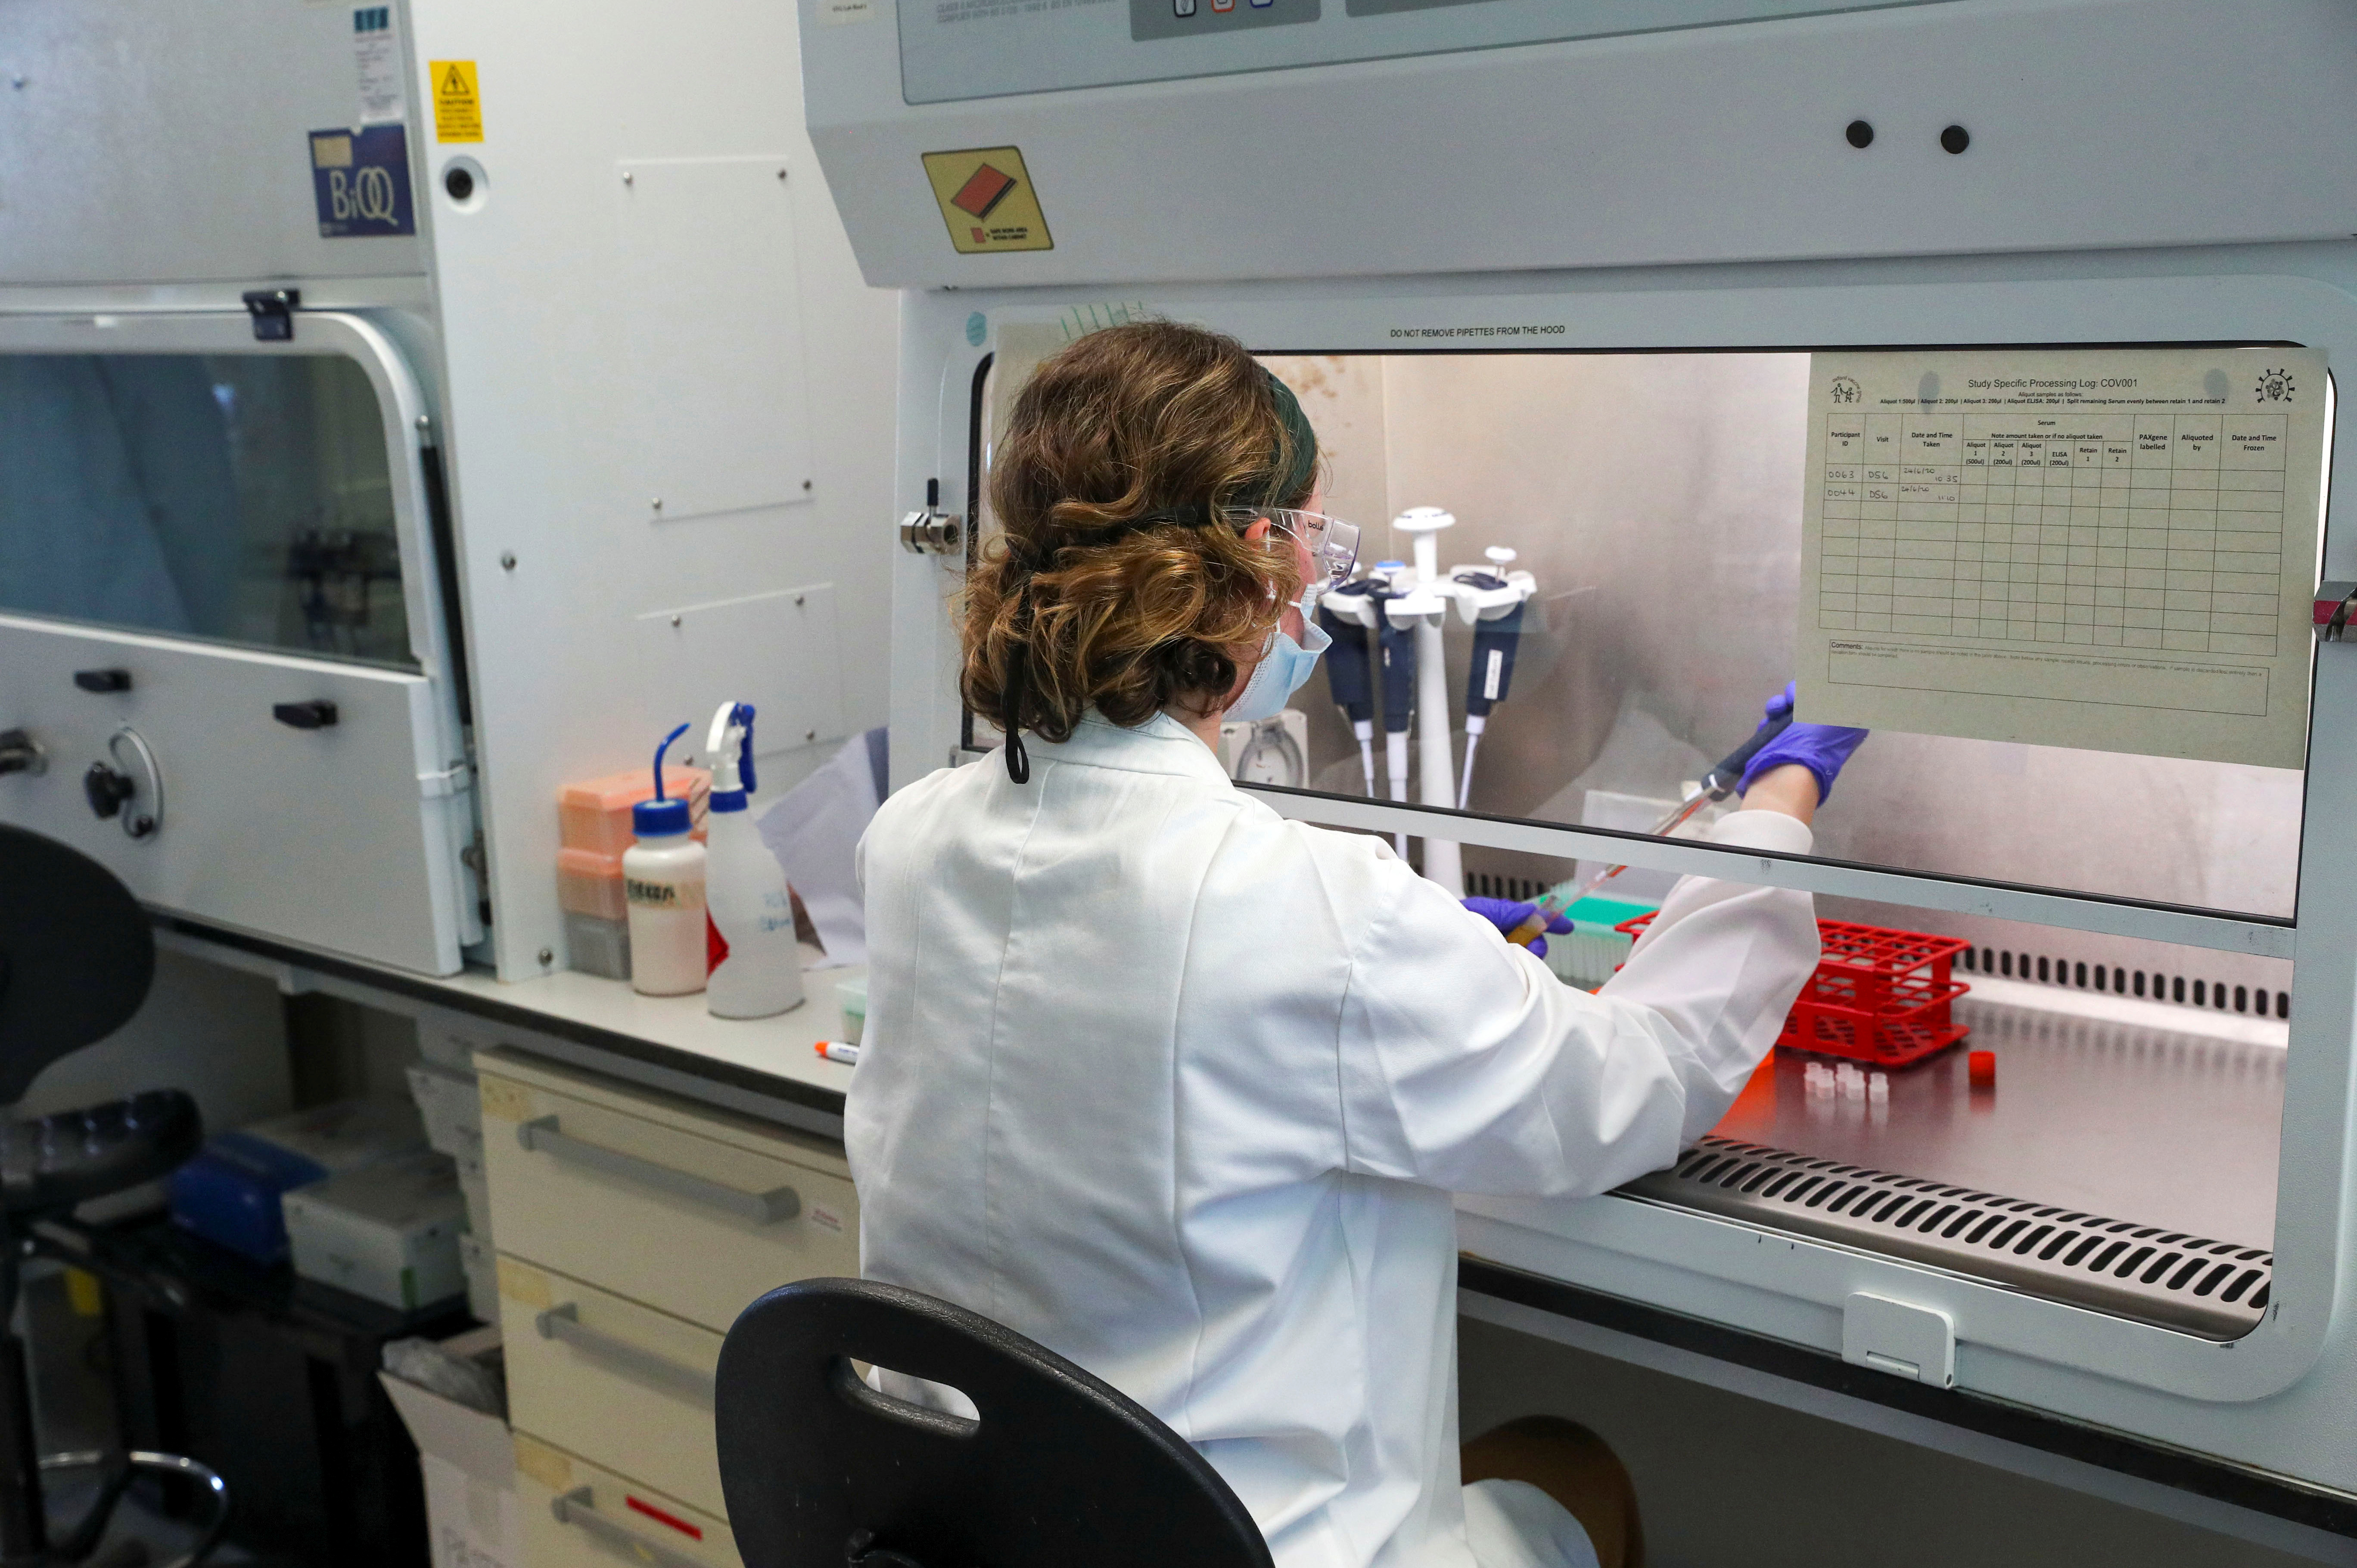 Un científico trabaja en el laboratorio donde se produce una vacuna contra el coronavirus (COVID-19) en las instalaciones del Grupo de Vacunas de Oxford en el Hospital Churchill en Oxford, Gran Bretaña, el 24 de junio. , 2020. (Steve Parsons a través de REUTERS)